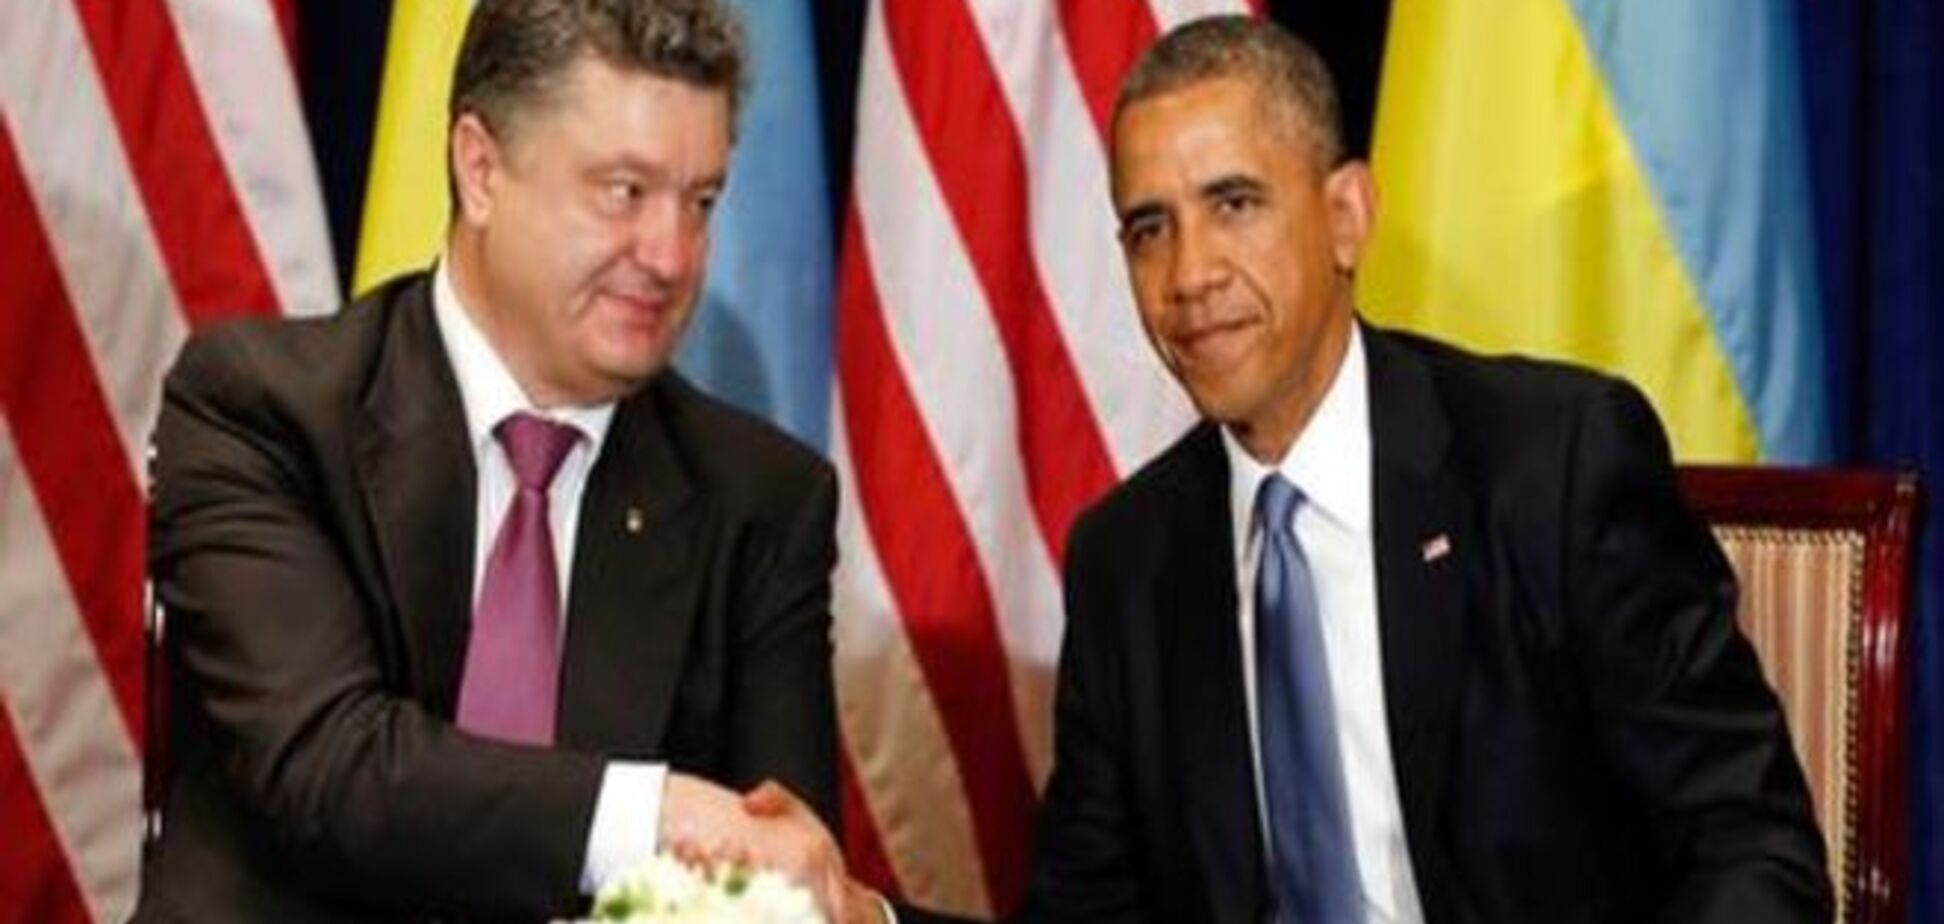 Комментарий: Остановит ли Обама Путина по просьбе Порошенко?